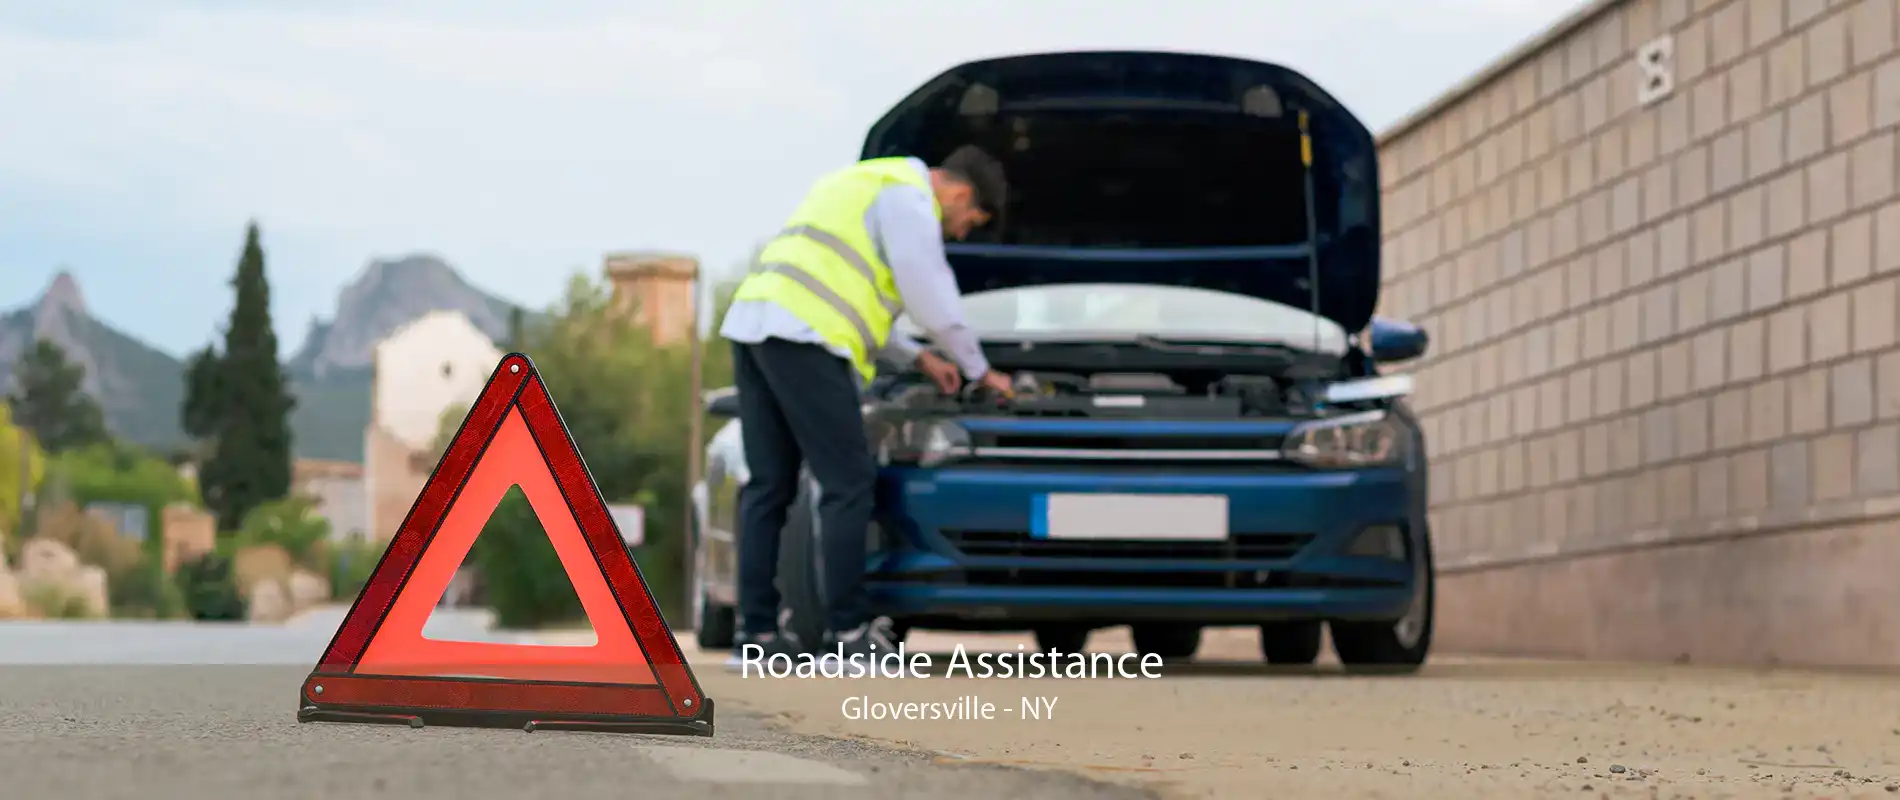 Roadside Assistance Gloversville - NY